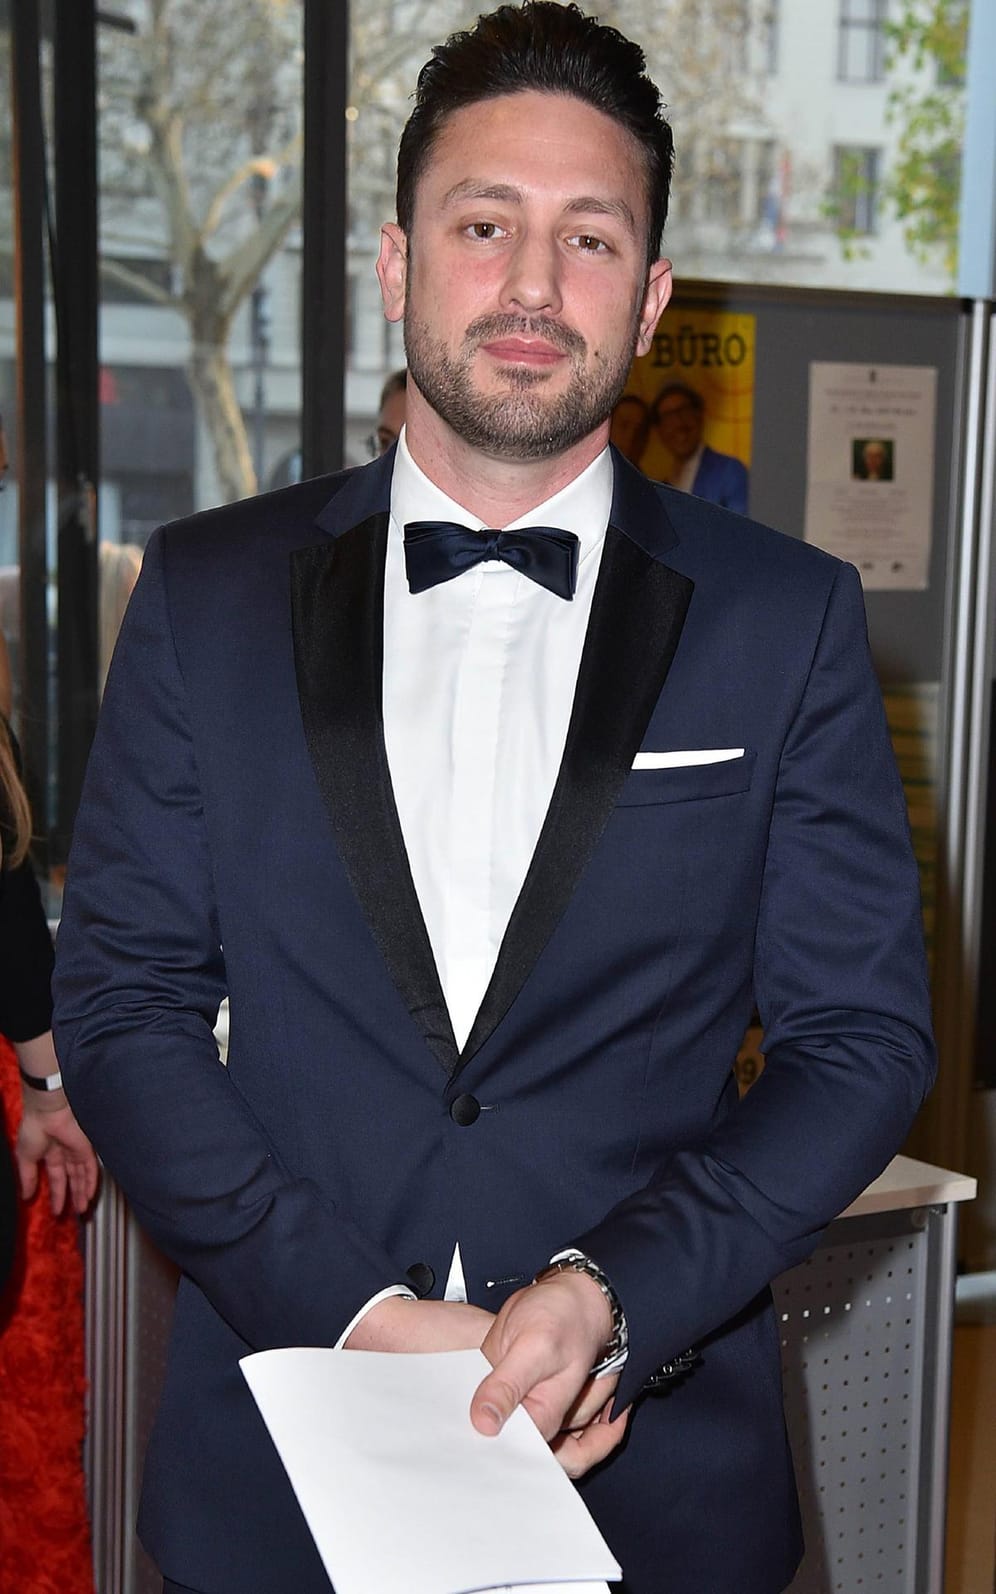 Daniel Völz verteilte 2018 die Rosen in der achten Staffel "Der Bachelor".